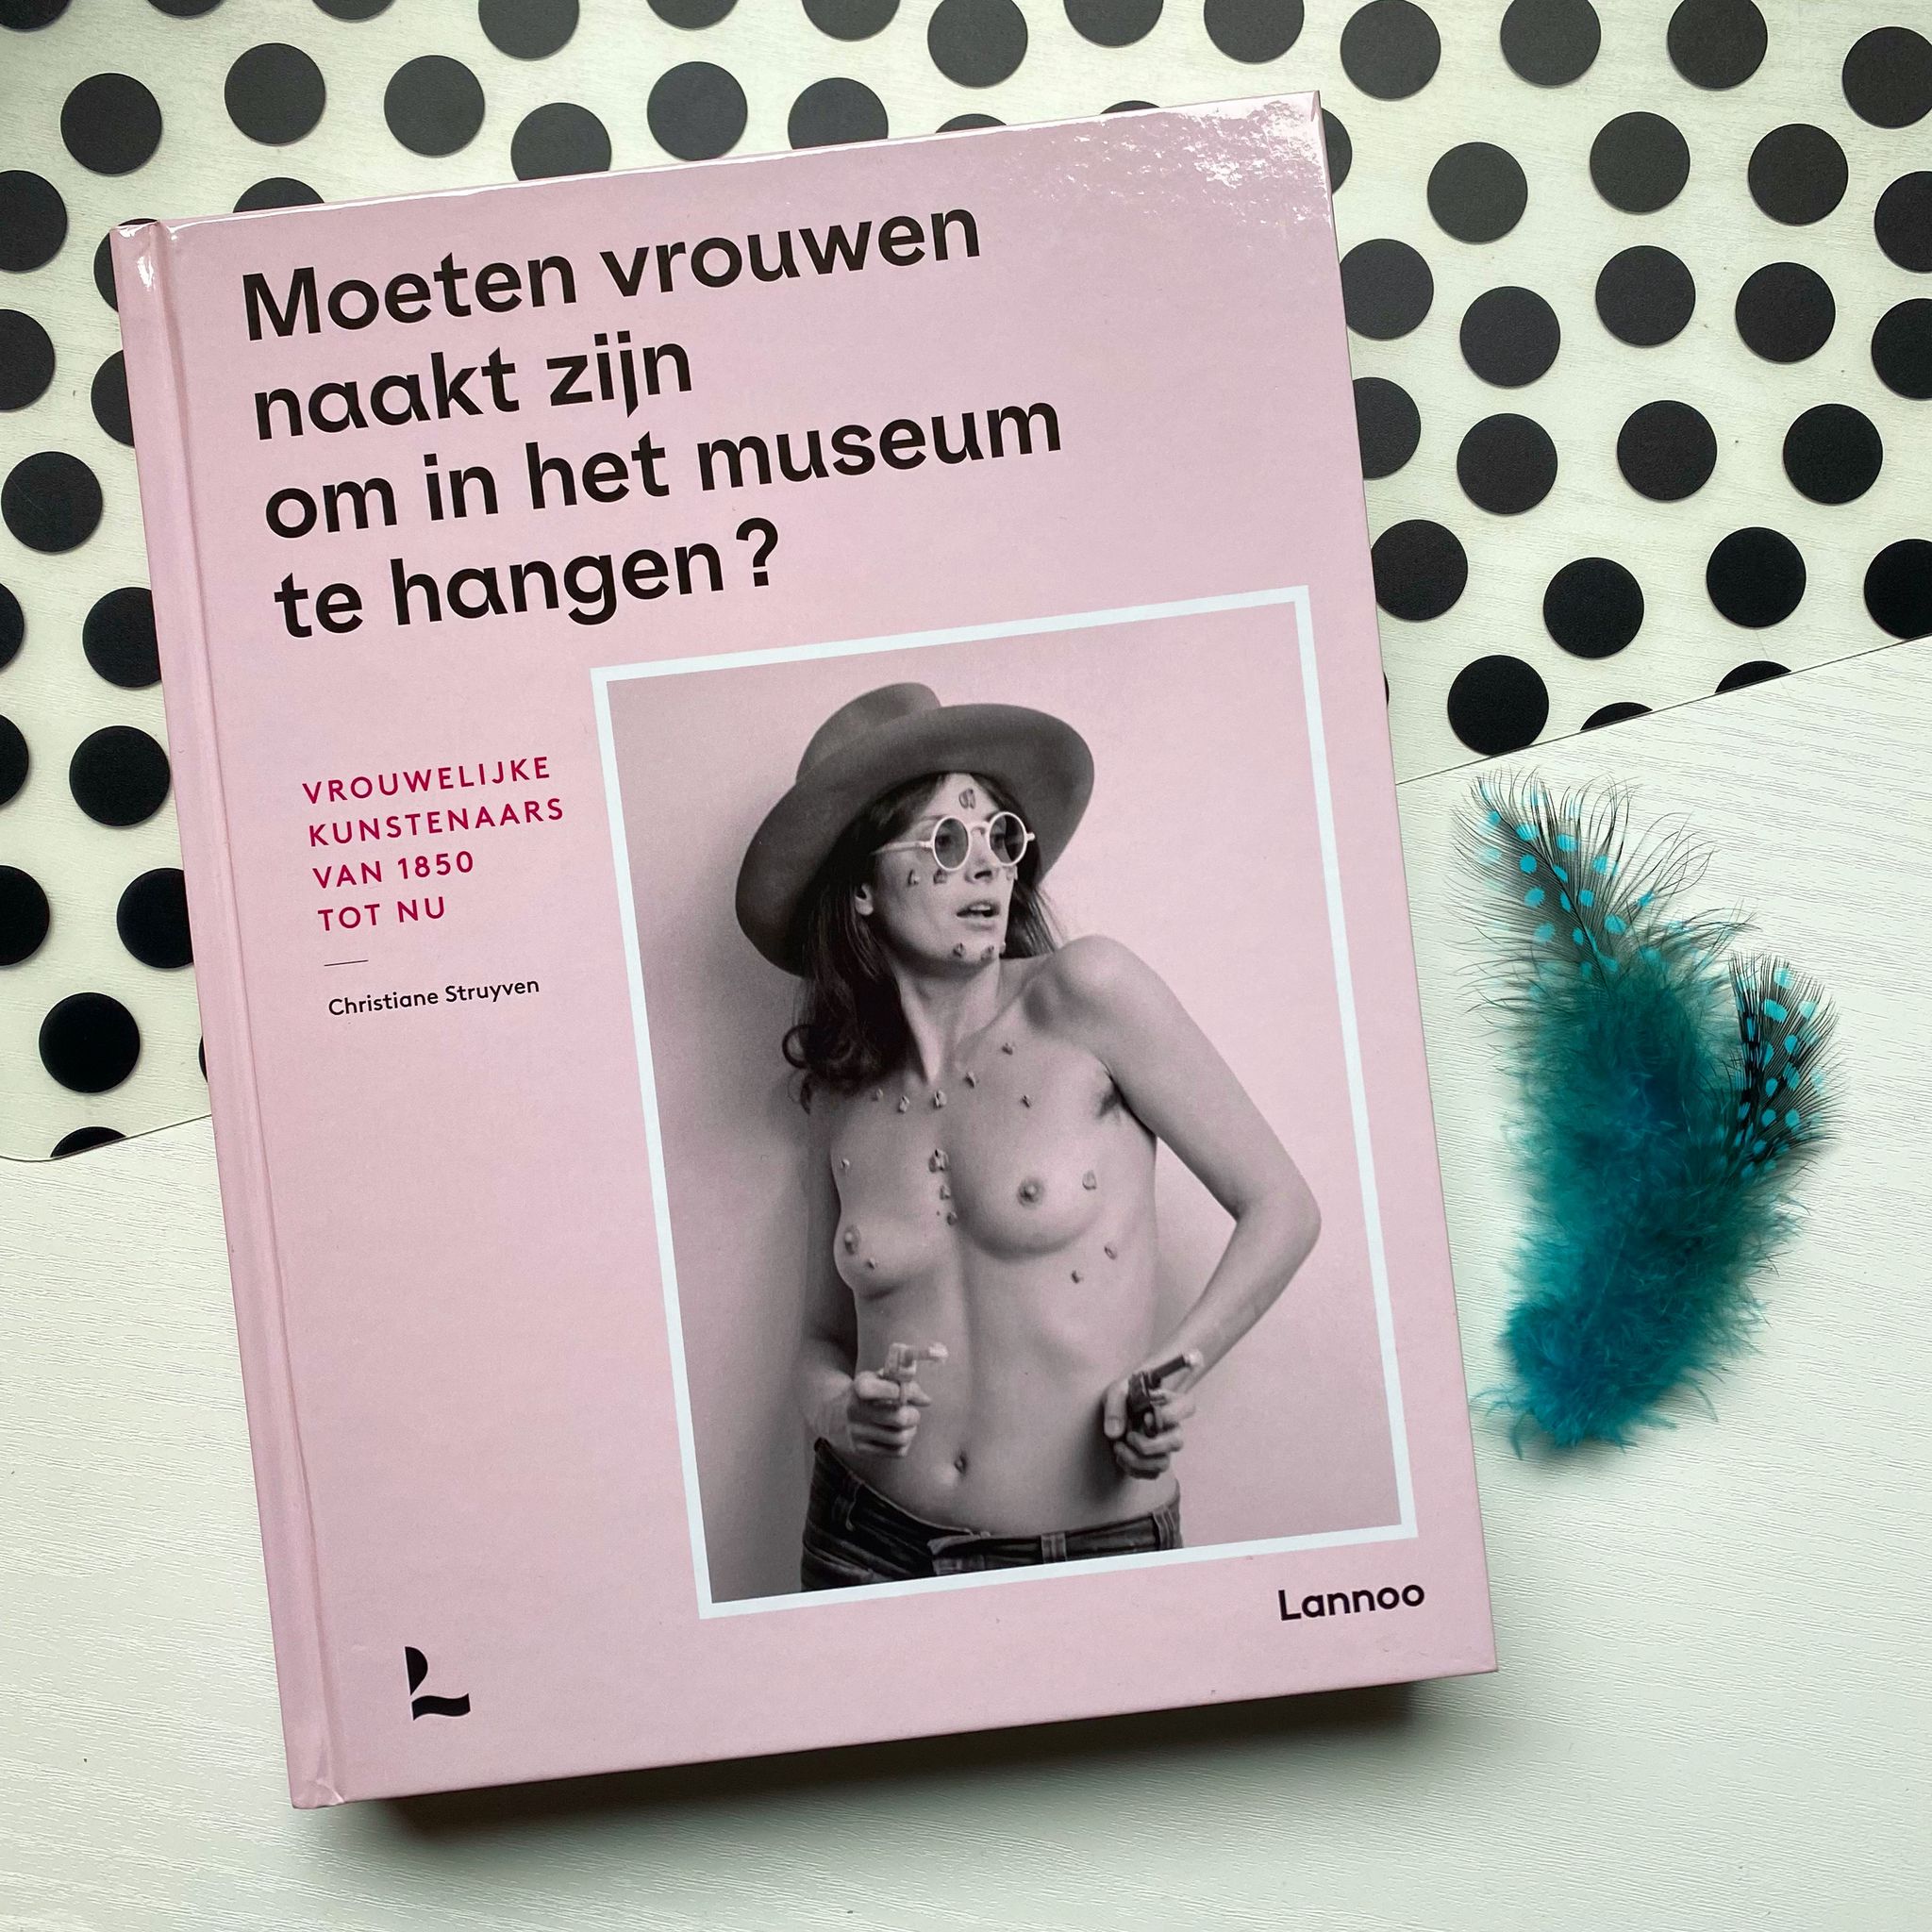 Moeten vrouwen naakt zijn om in een museum te hangen?